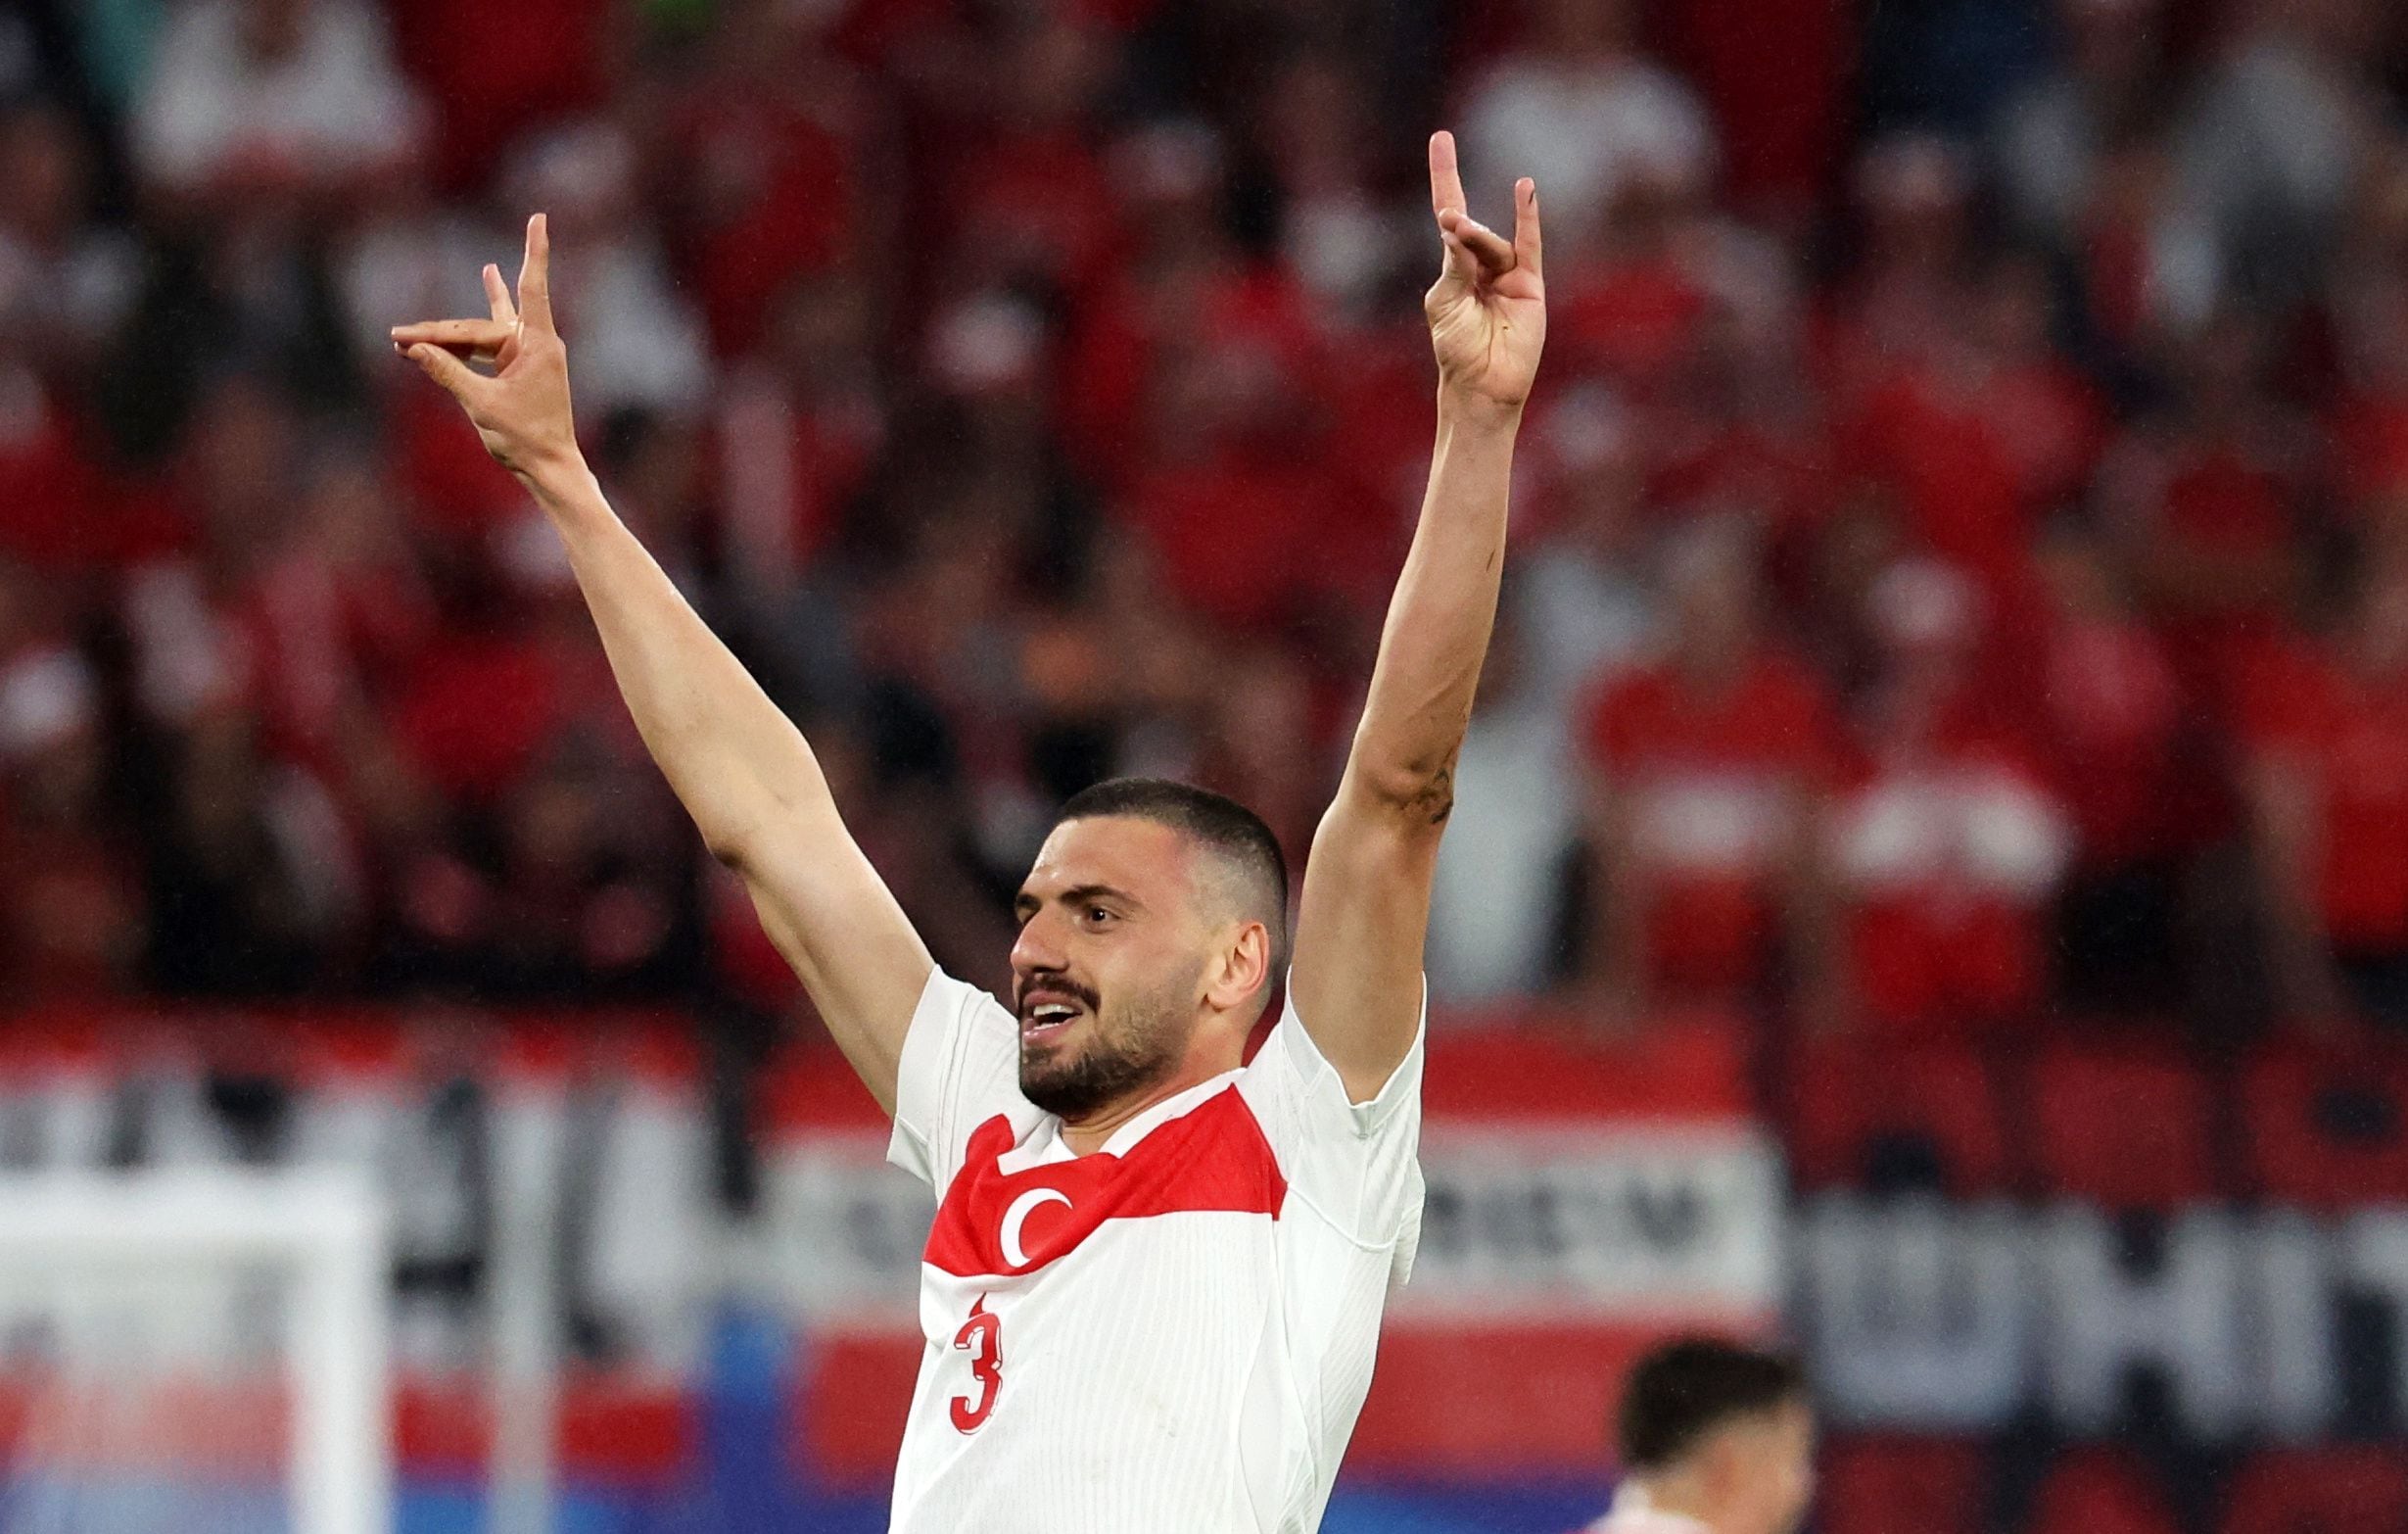 El saludo del lobo gris del futbolista turco Demiral tensa las relaciones entre Alemania y Turquía